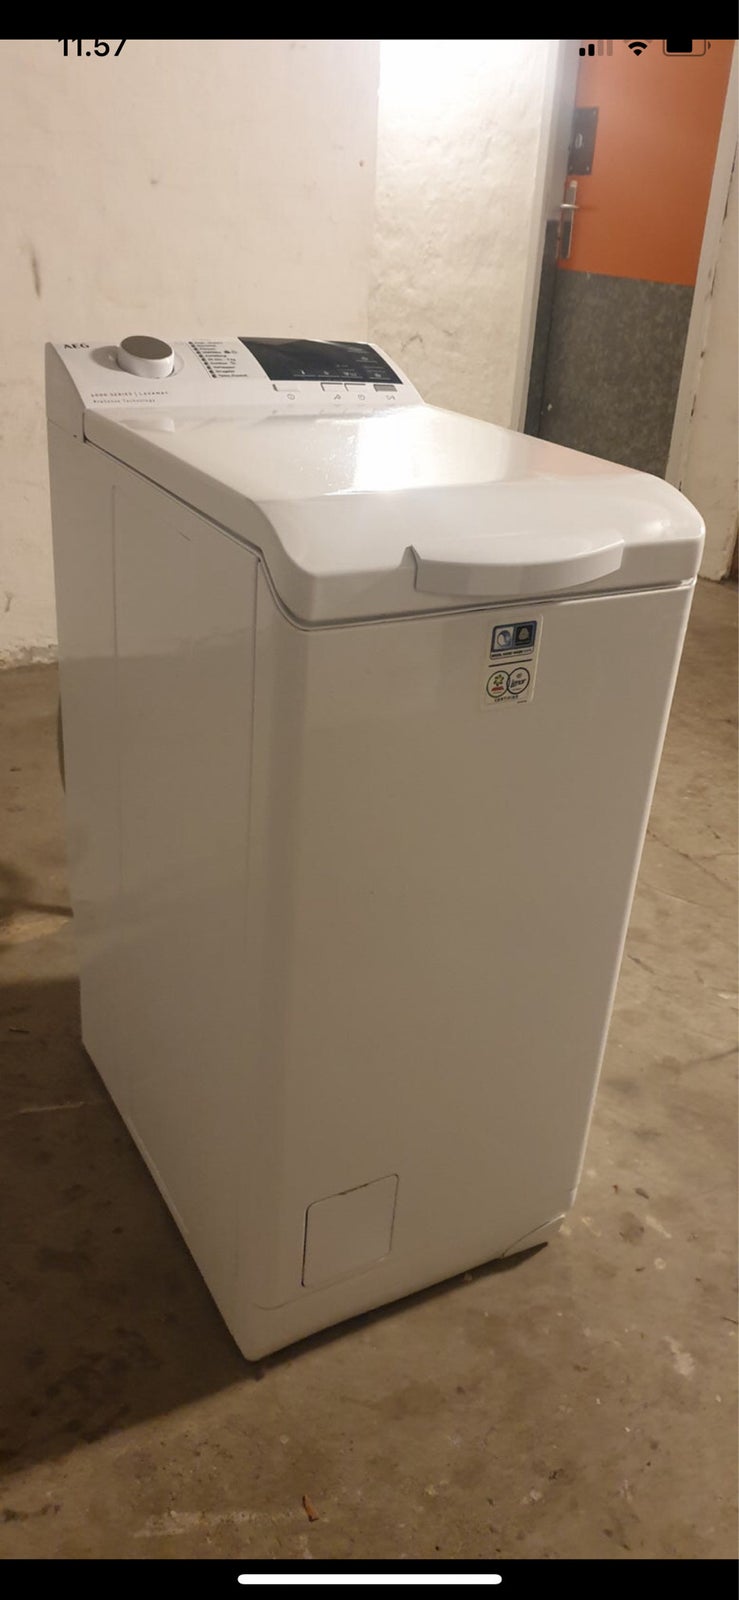 AEG vaskemaskine, Serie 6000, topbetjent